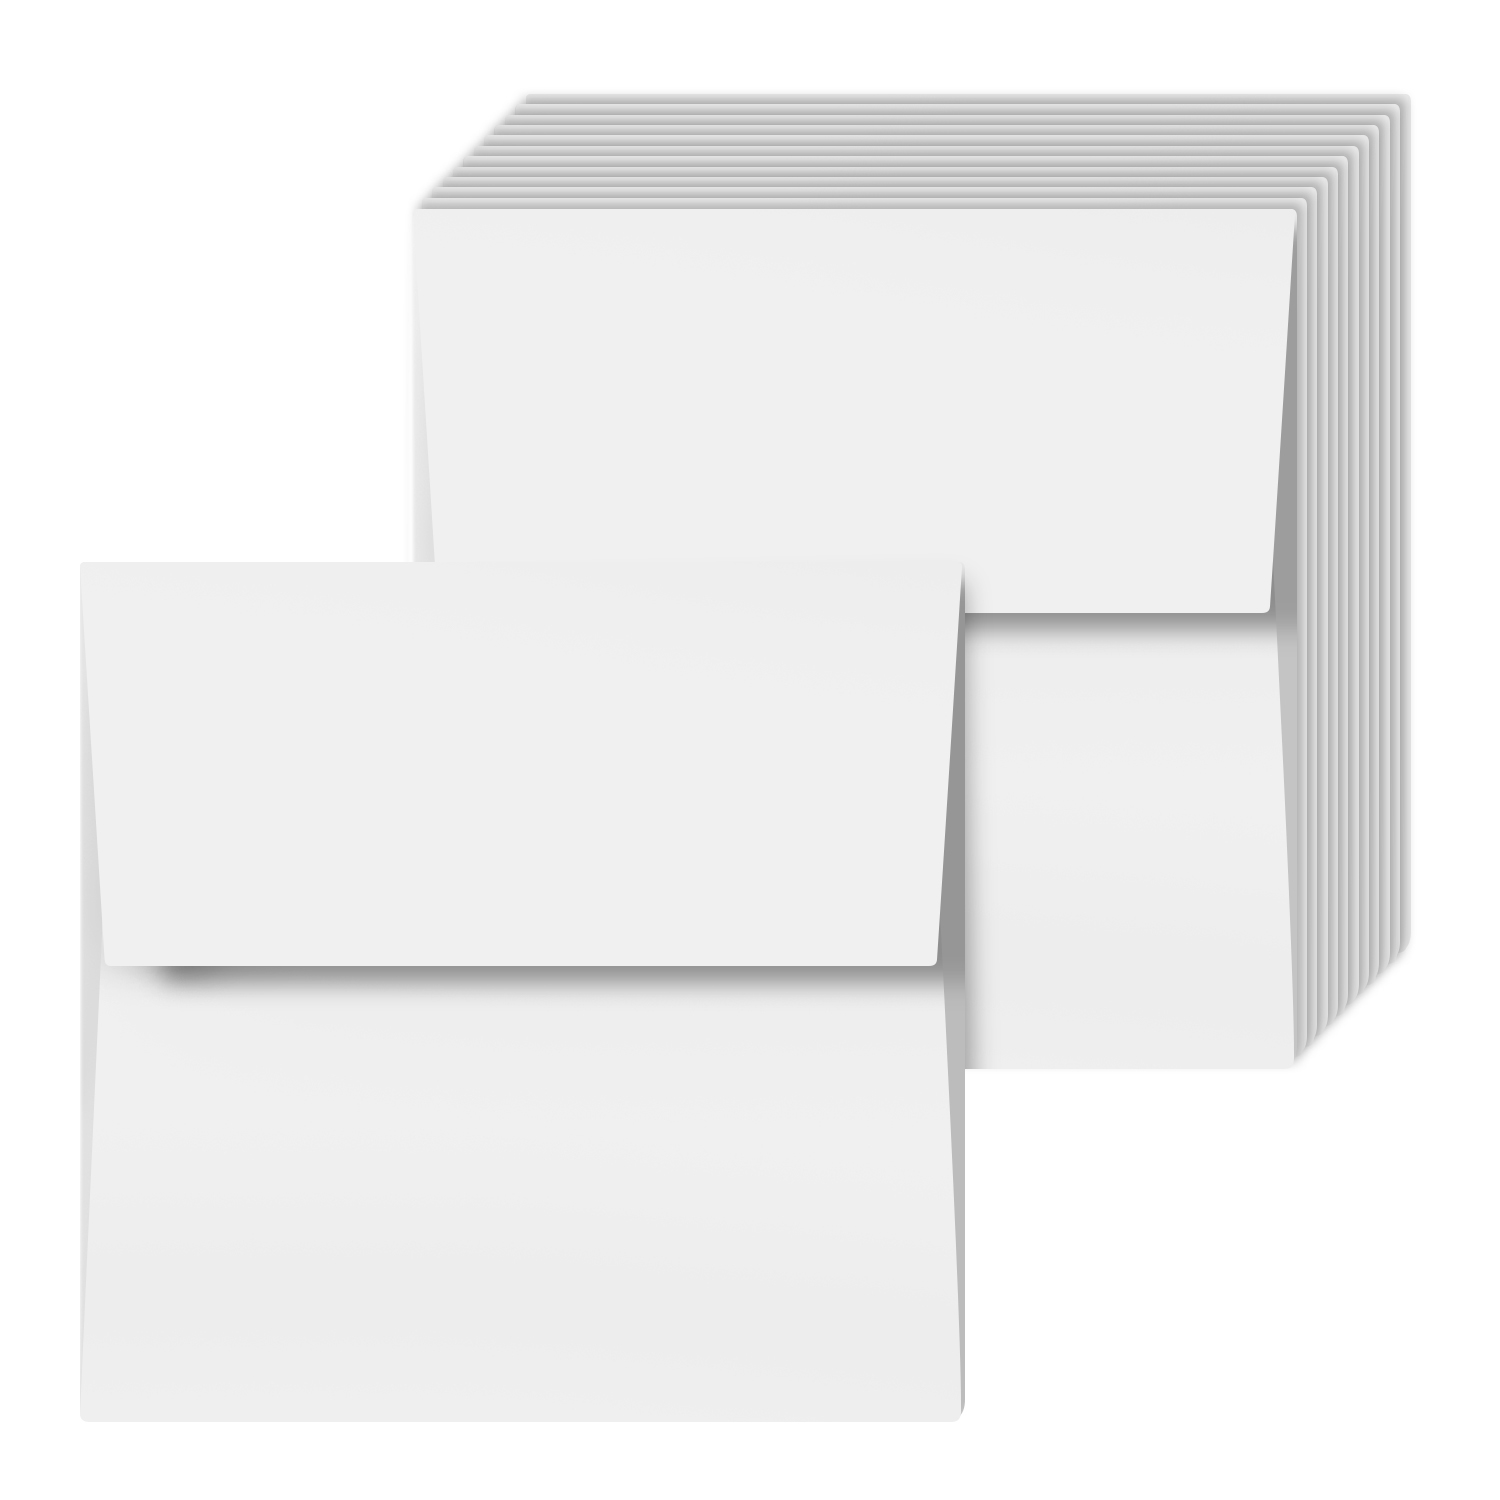 Premium A5 size wedding invitations bulk White C5 envelopes 